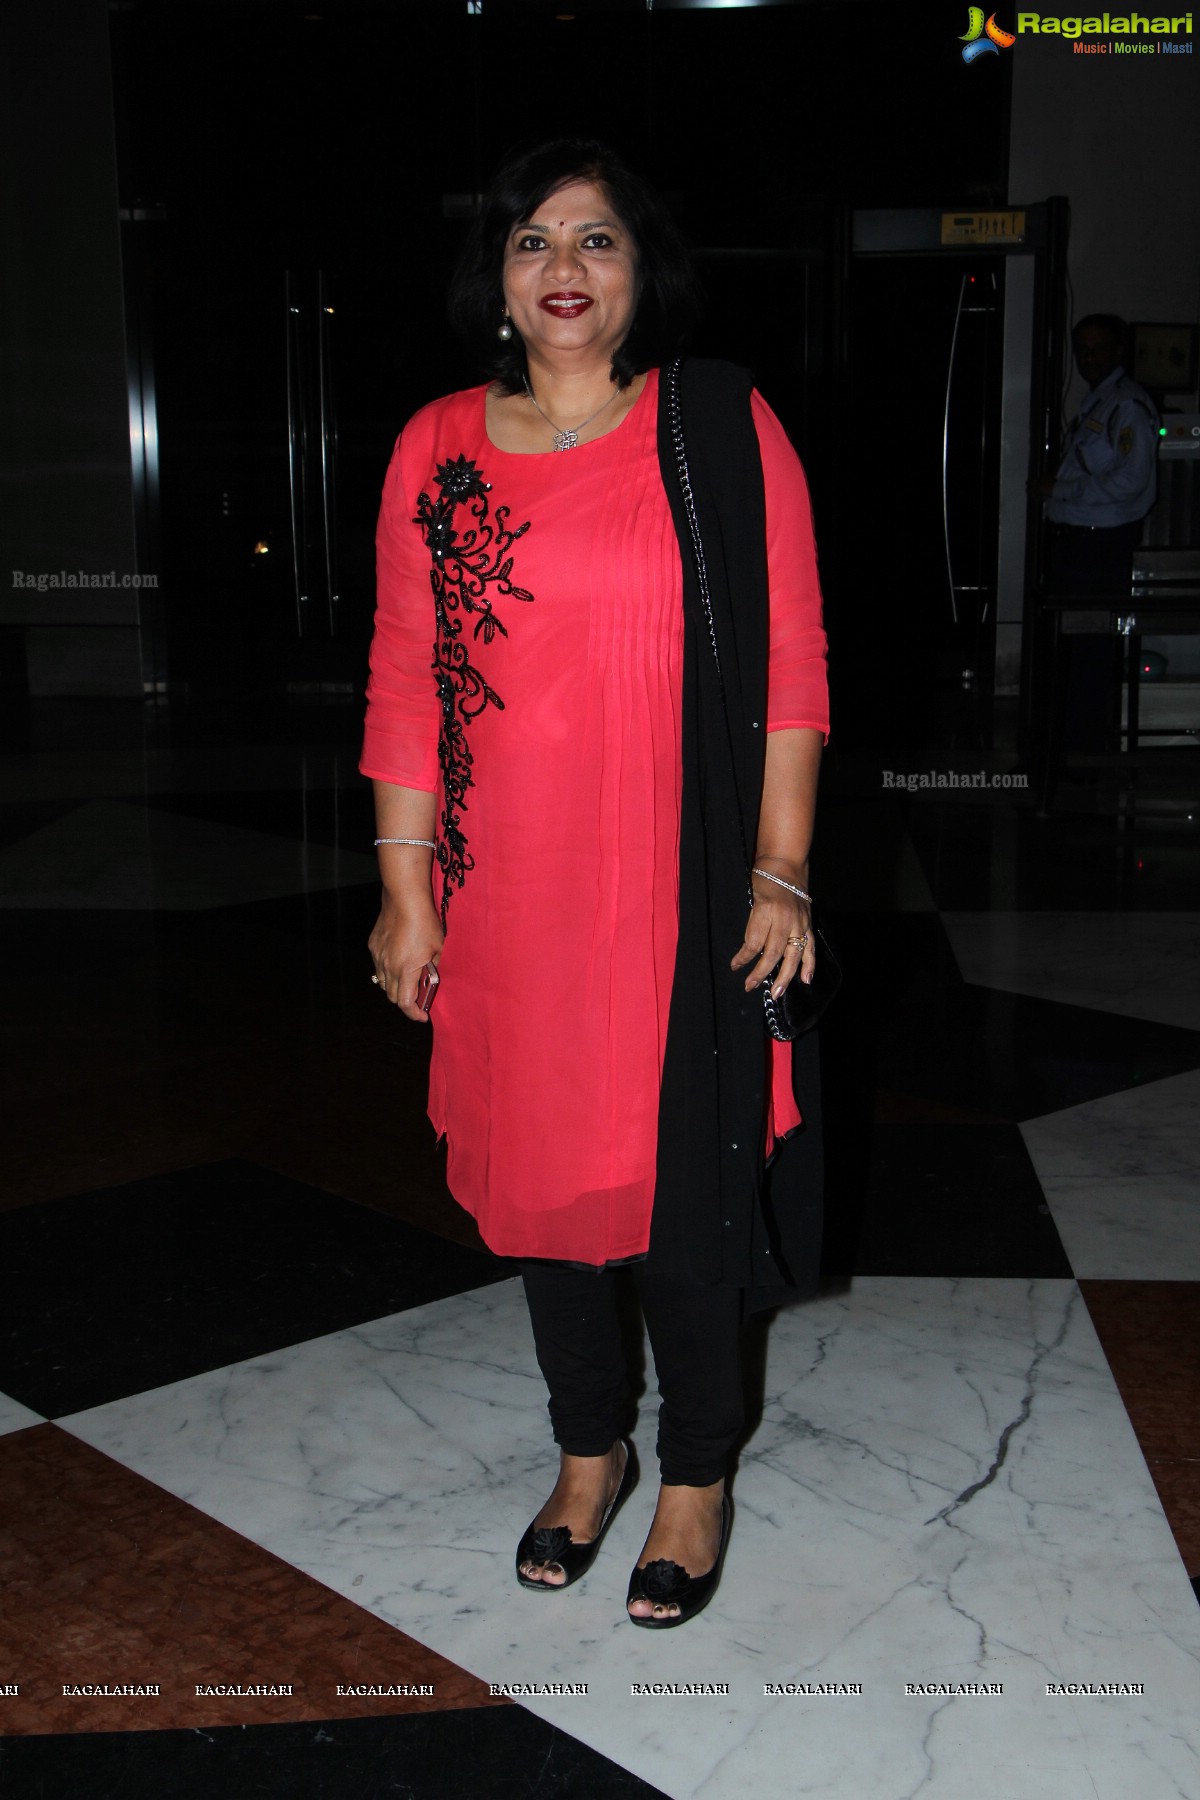 UBF Pink Ribbon Evening 2014 at Hotel Marriott, Hyderabad